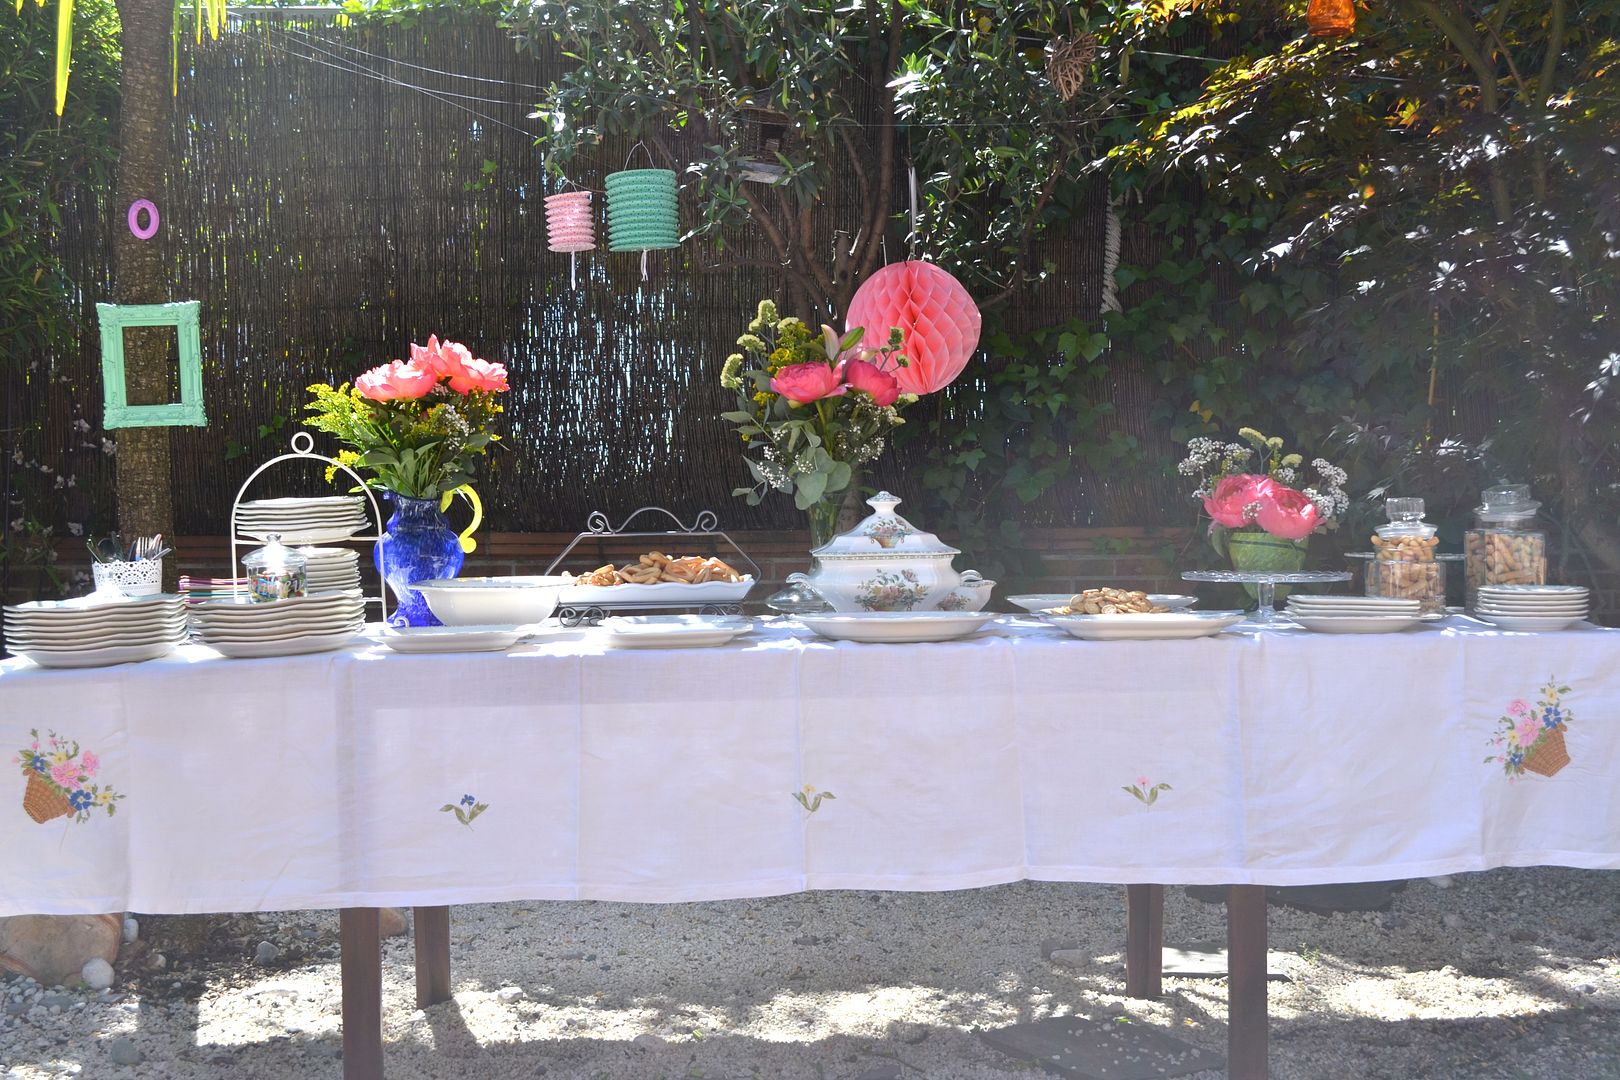  photo buffet-comida-celebracioacuten-terraza-jardiacuten-fiesta4_zps86b8c7e5.jpg